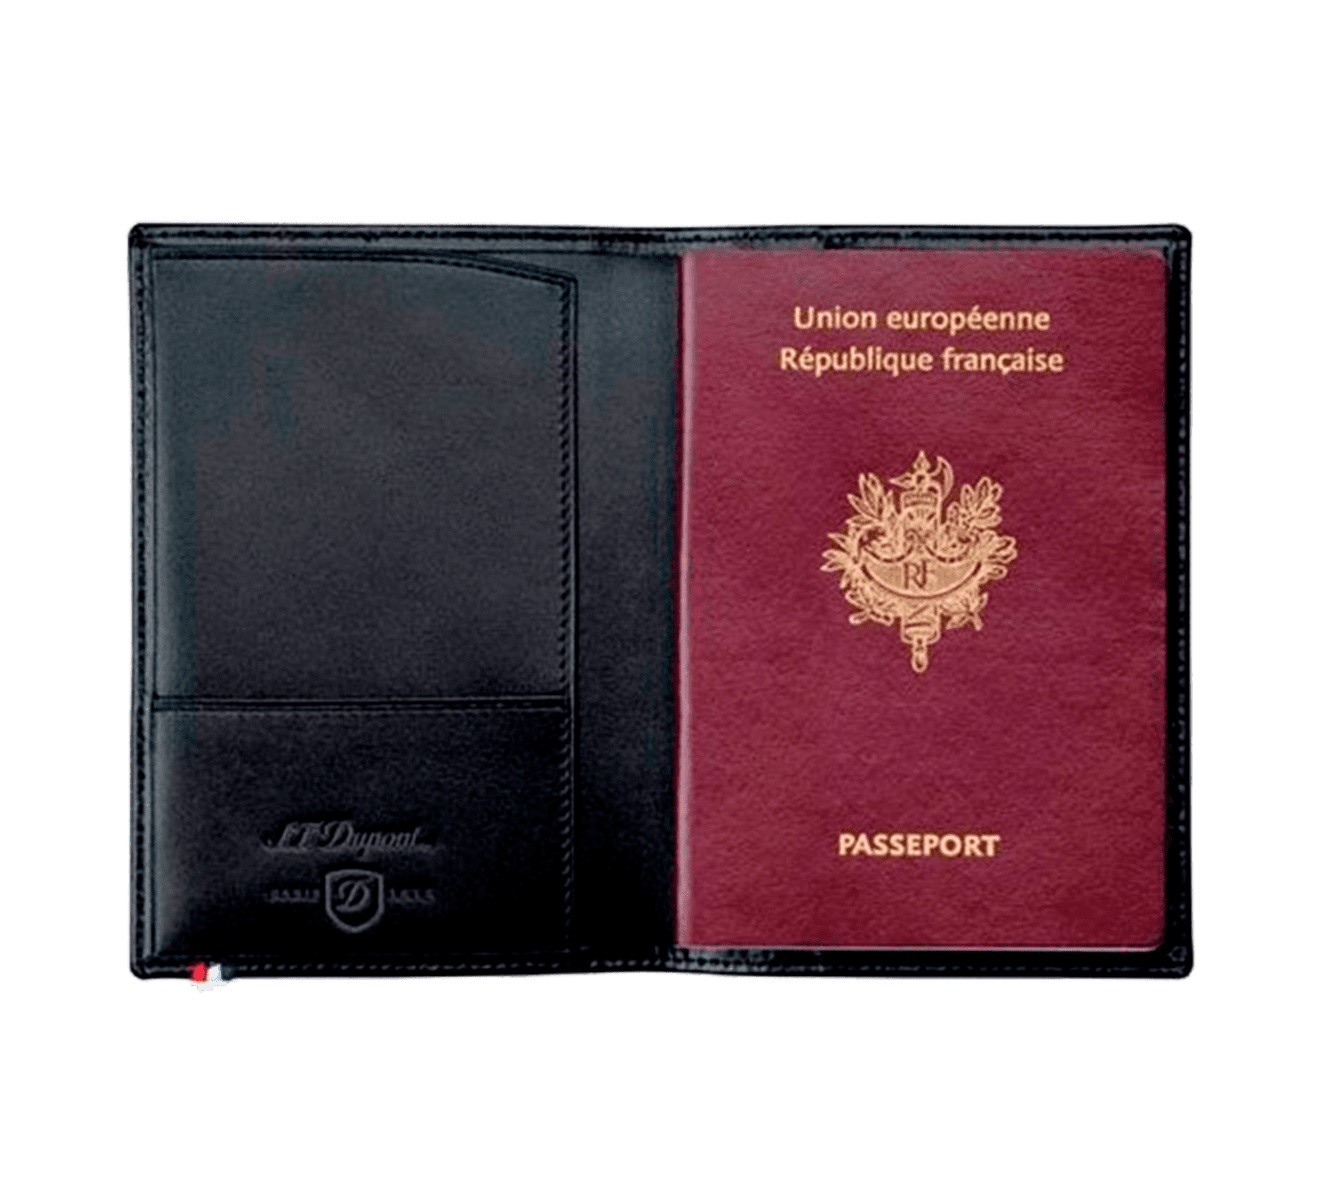 Обложка для паспорта S.T. Dupont Line D 180312 - фото 2 – Mercury